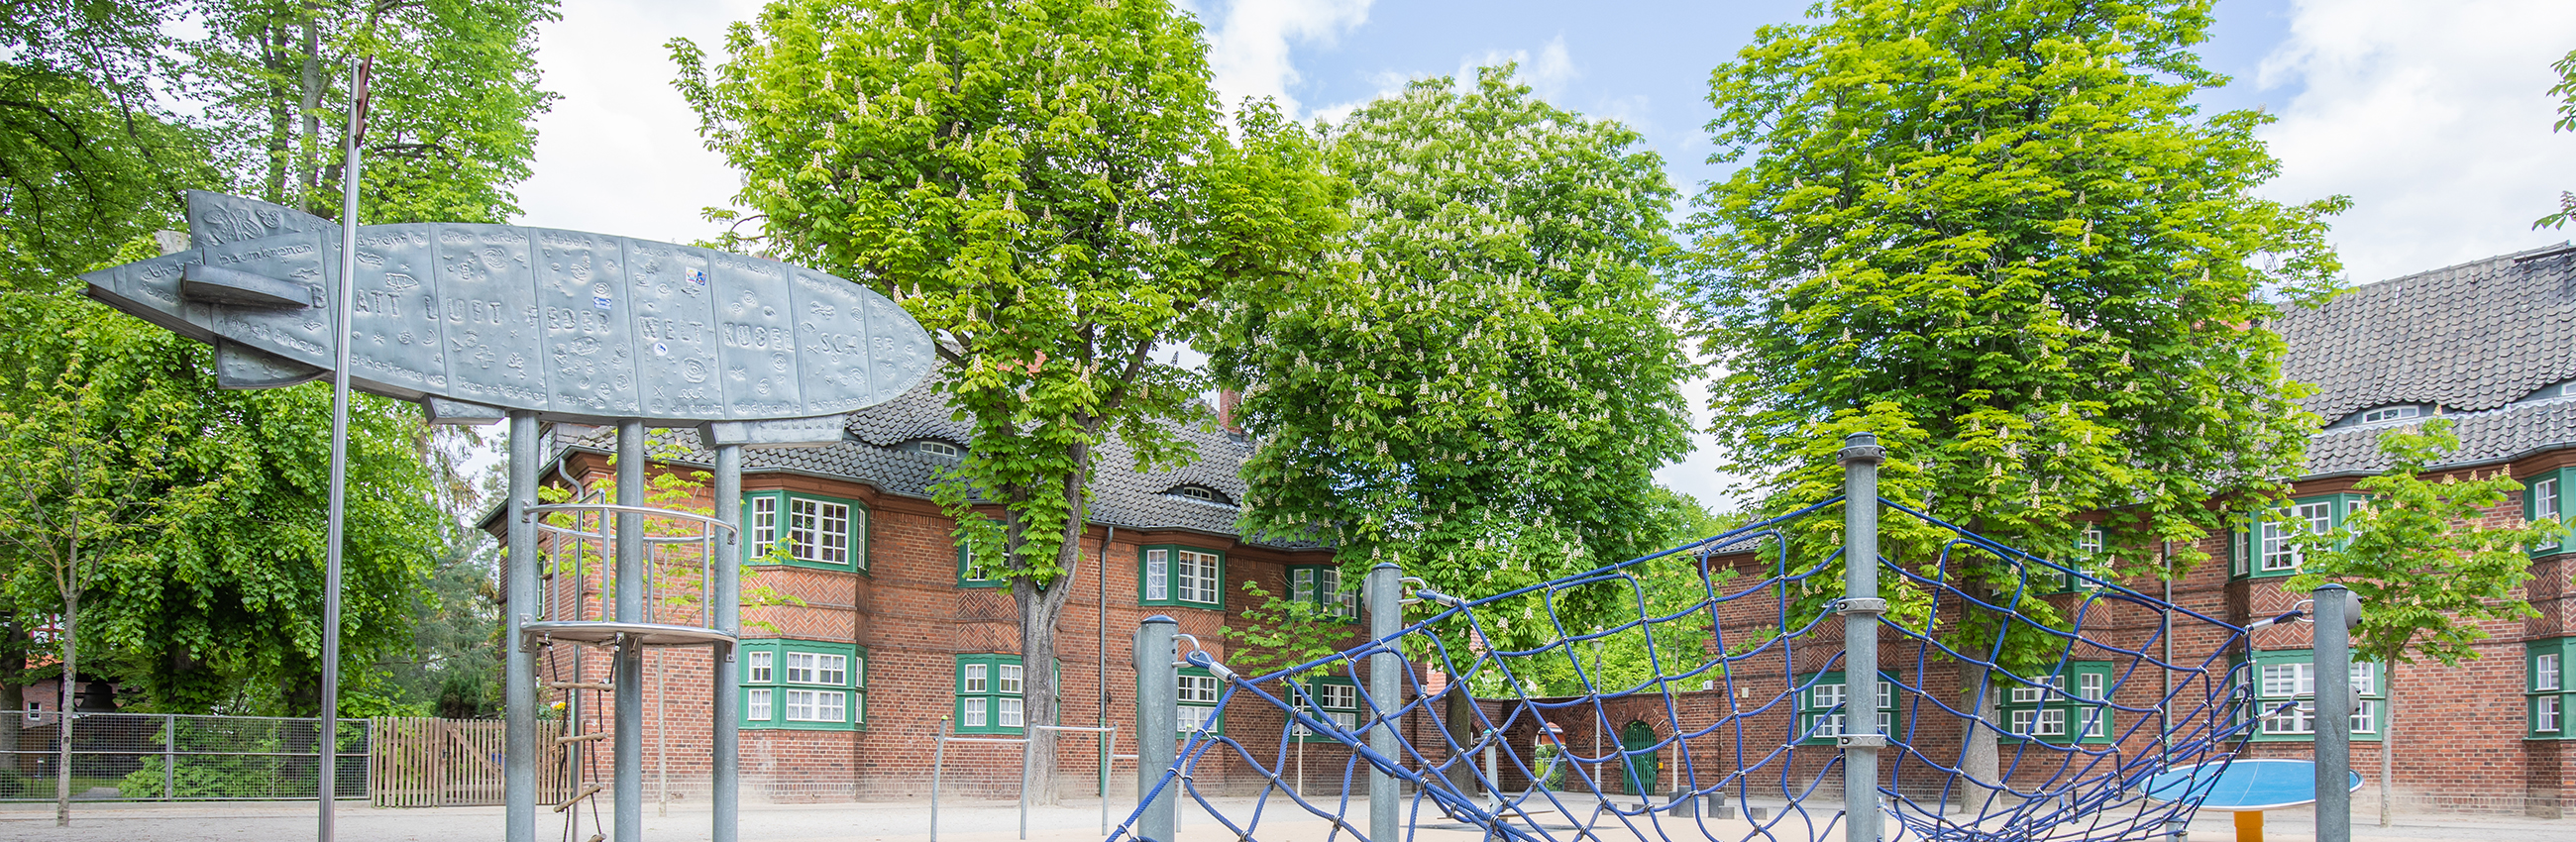 Schulhof der Zeppelingrundschule, gegenüber der Kirche, zweigeschossige Backsteingebäude, Kastanienbäume und ein Spielplatz